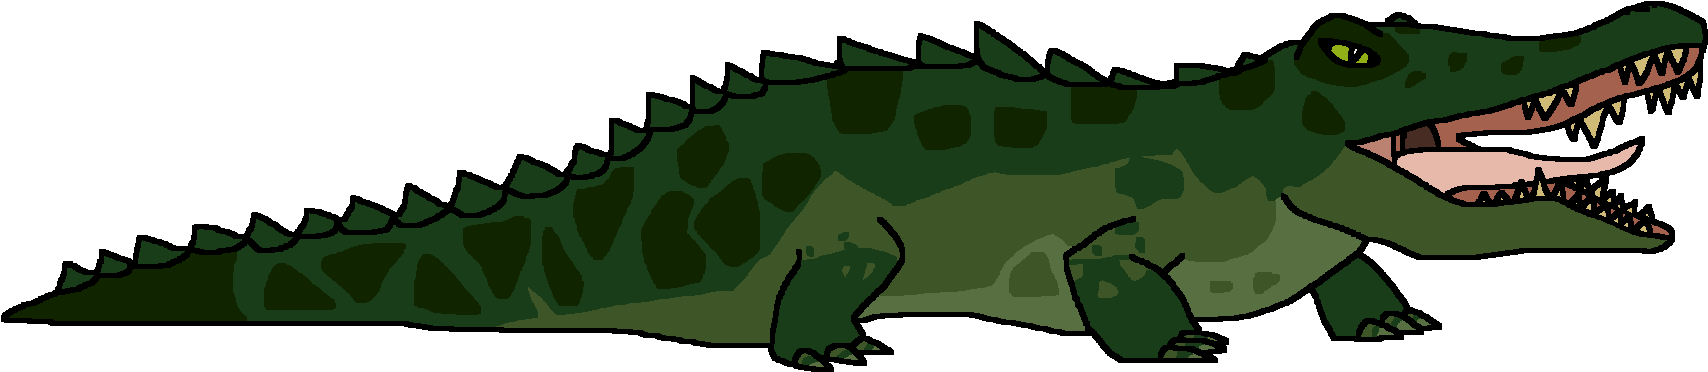 Green Alligator Illustration PNG